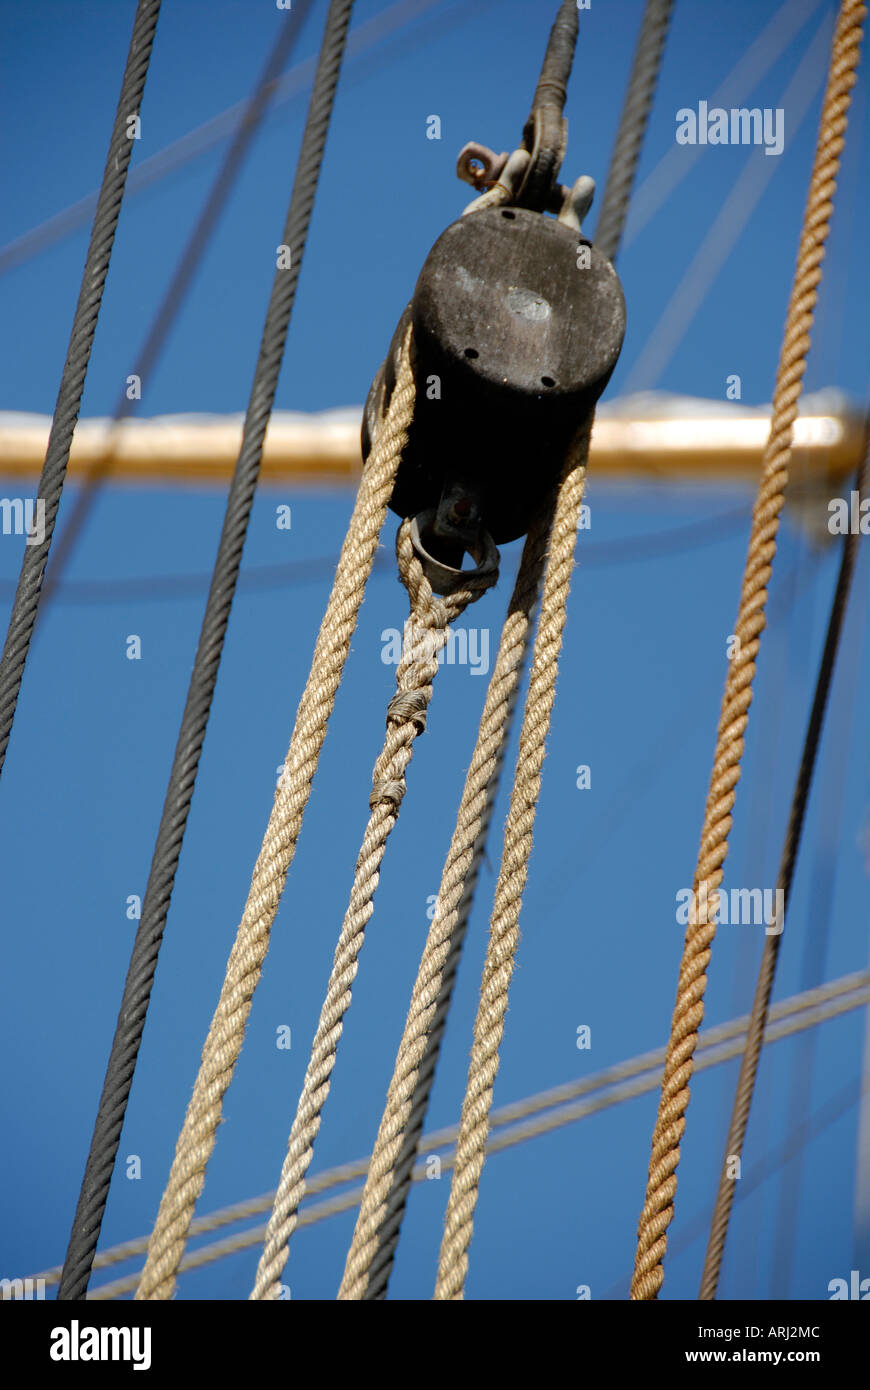 Seile Umlenkrollen sind weitgehend auf einem großen Segelschiff verwendet. Stockfoto